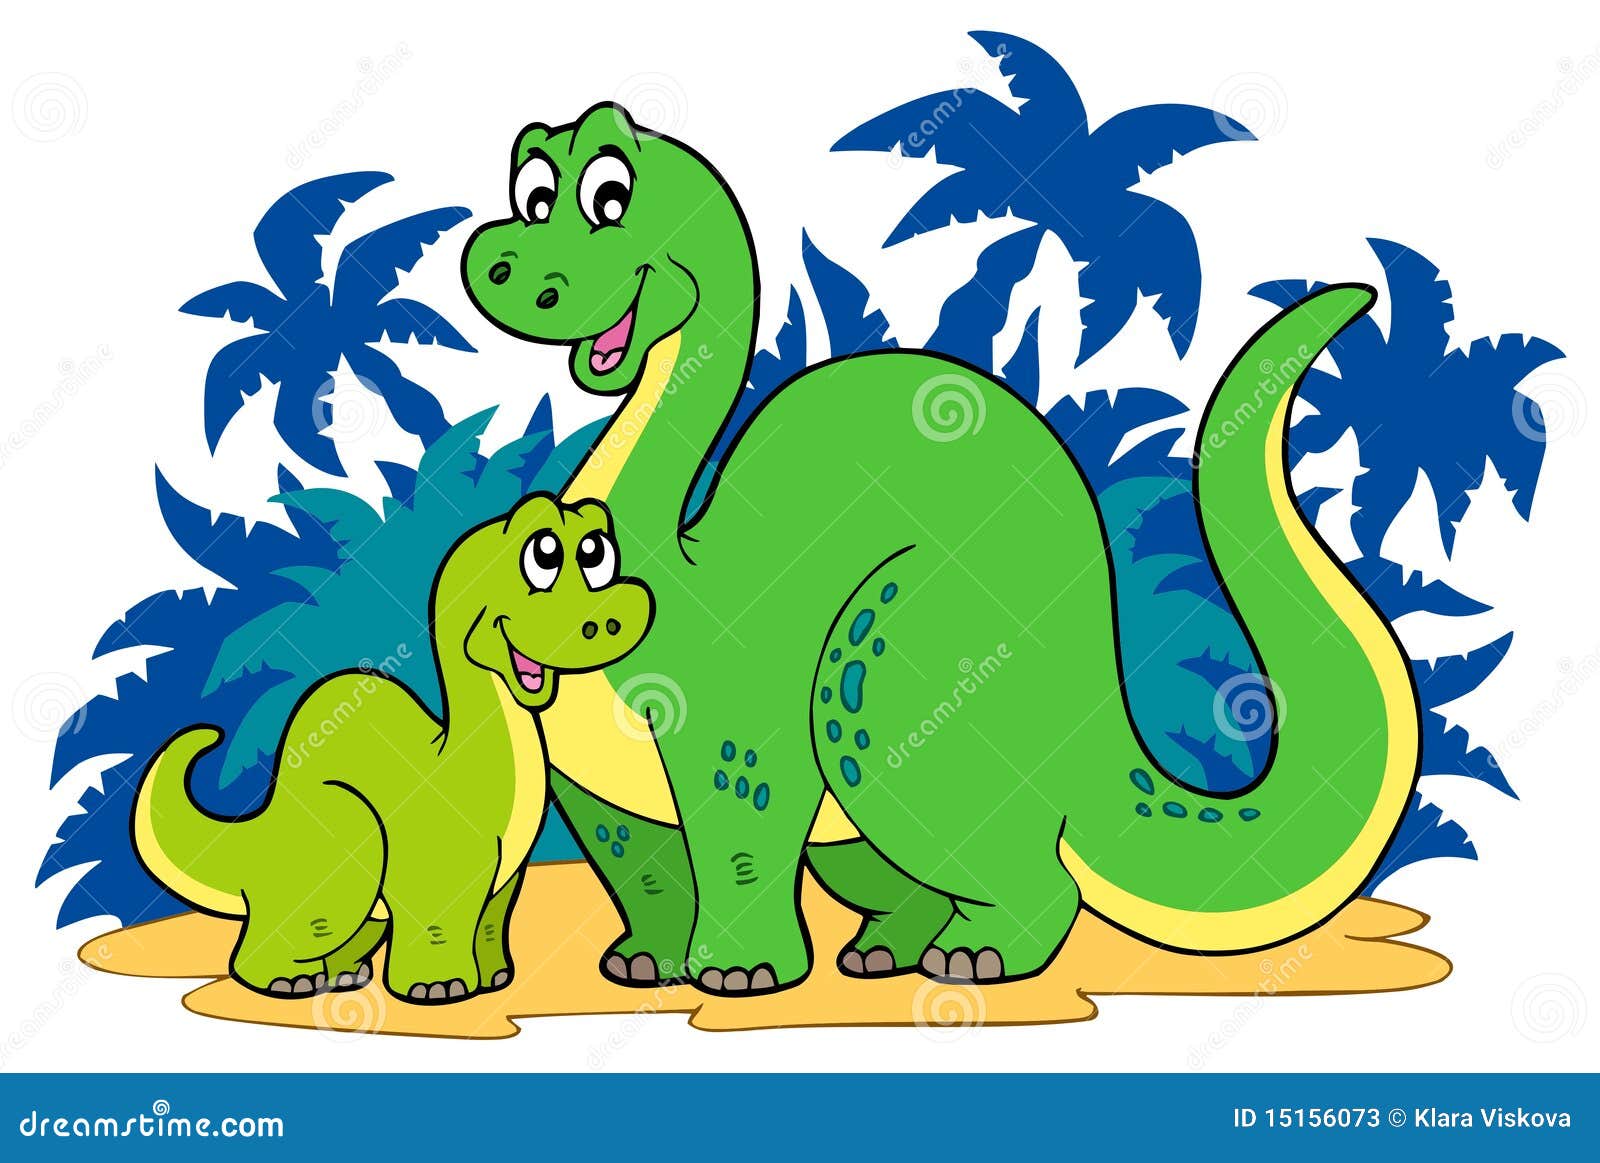 Família De Desenhos Animados De Dinossauros PNG , Adesivos De Dinossauro De  Desenho Animado, Ilustração, Desenho Animado Imagem PNG e PSD Para Download  Gratuito